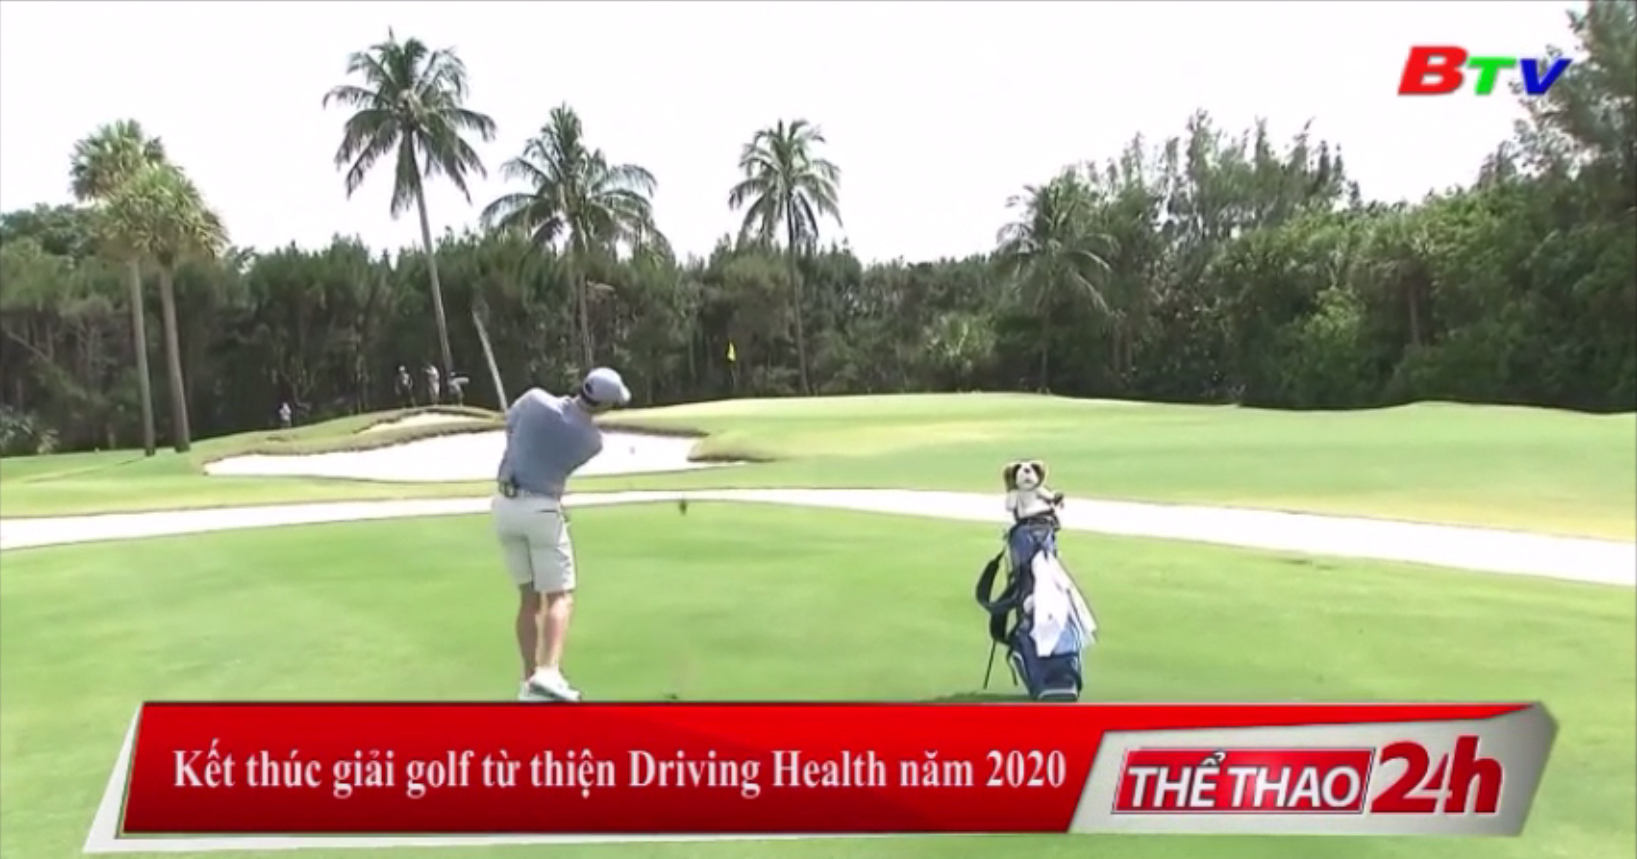 Kết thúc giải golf từ thiện Driving Health năm 2020